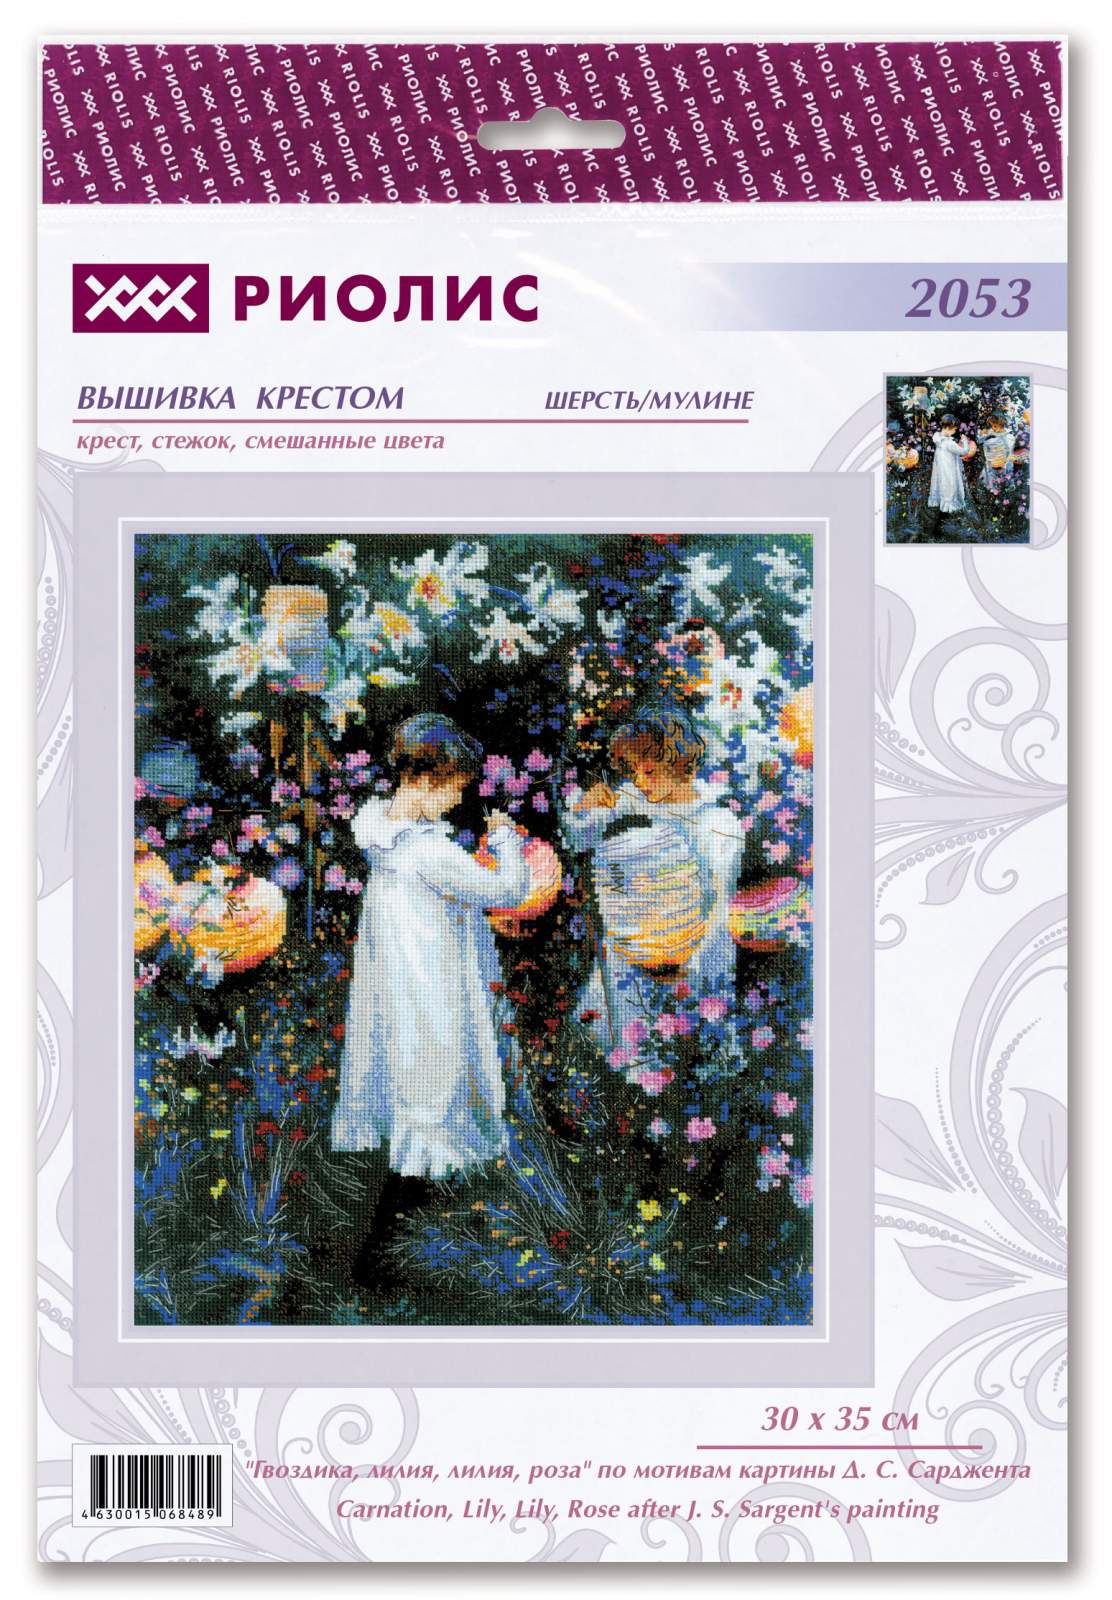 2053 «Гвоздика, лилия, лилия, роза» по мотивам картины Д. С. Сарджента. Фото N2